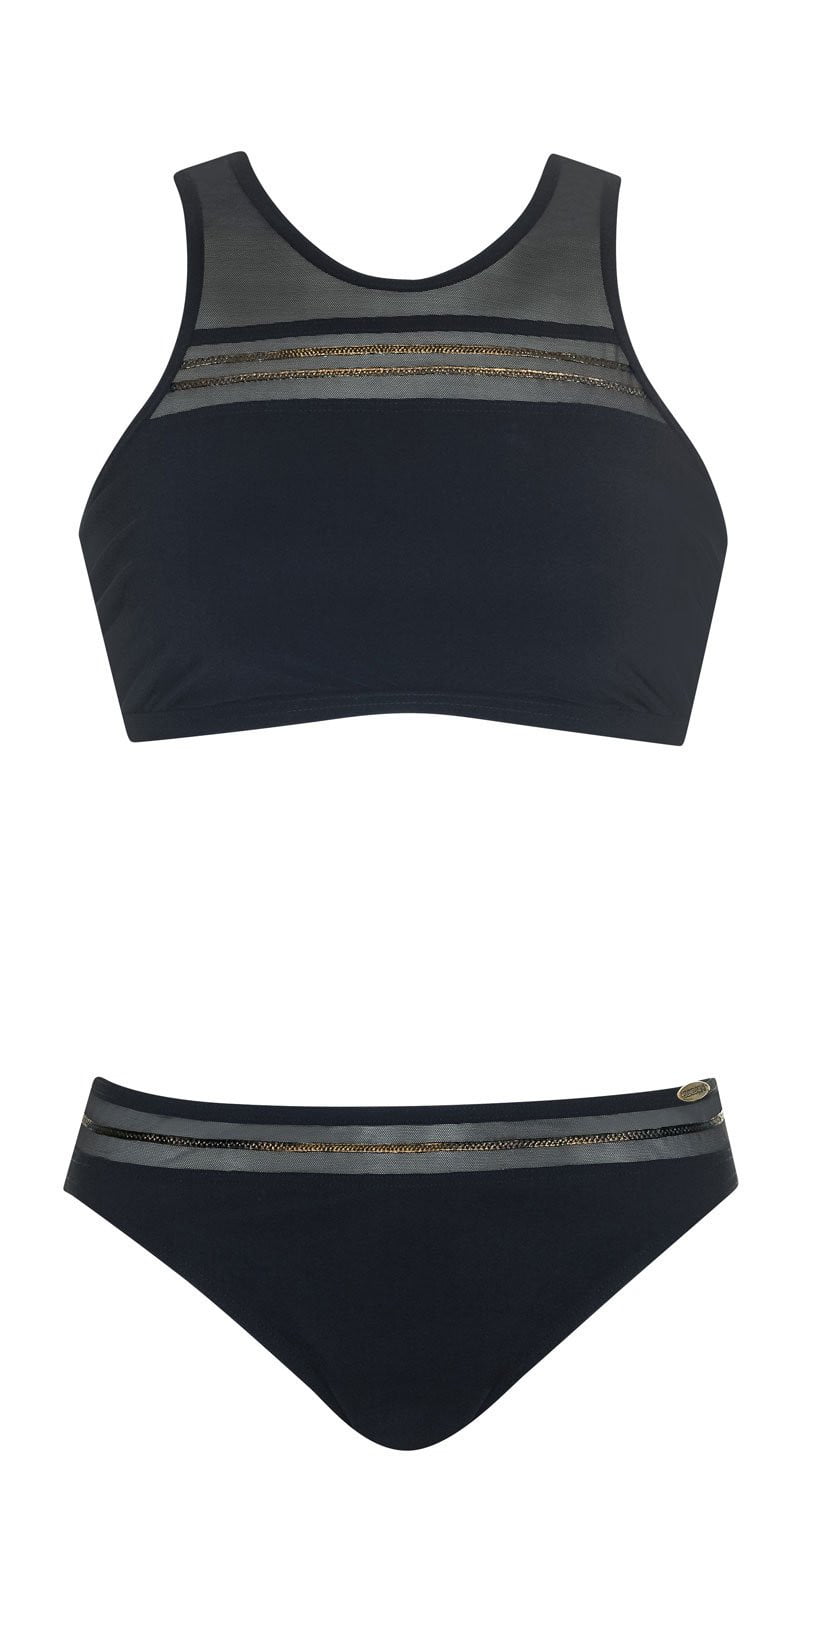 Sunflair Precious Dark Black Mastectomy Bikini Set 21193 5: